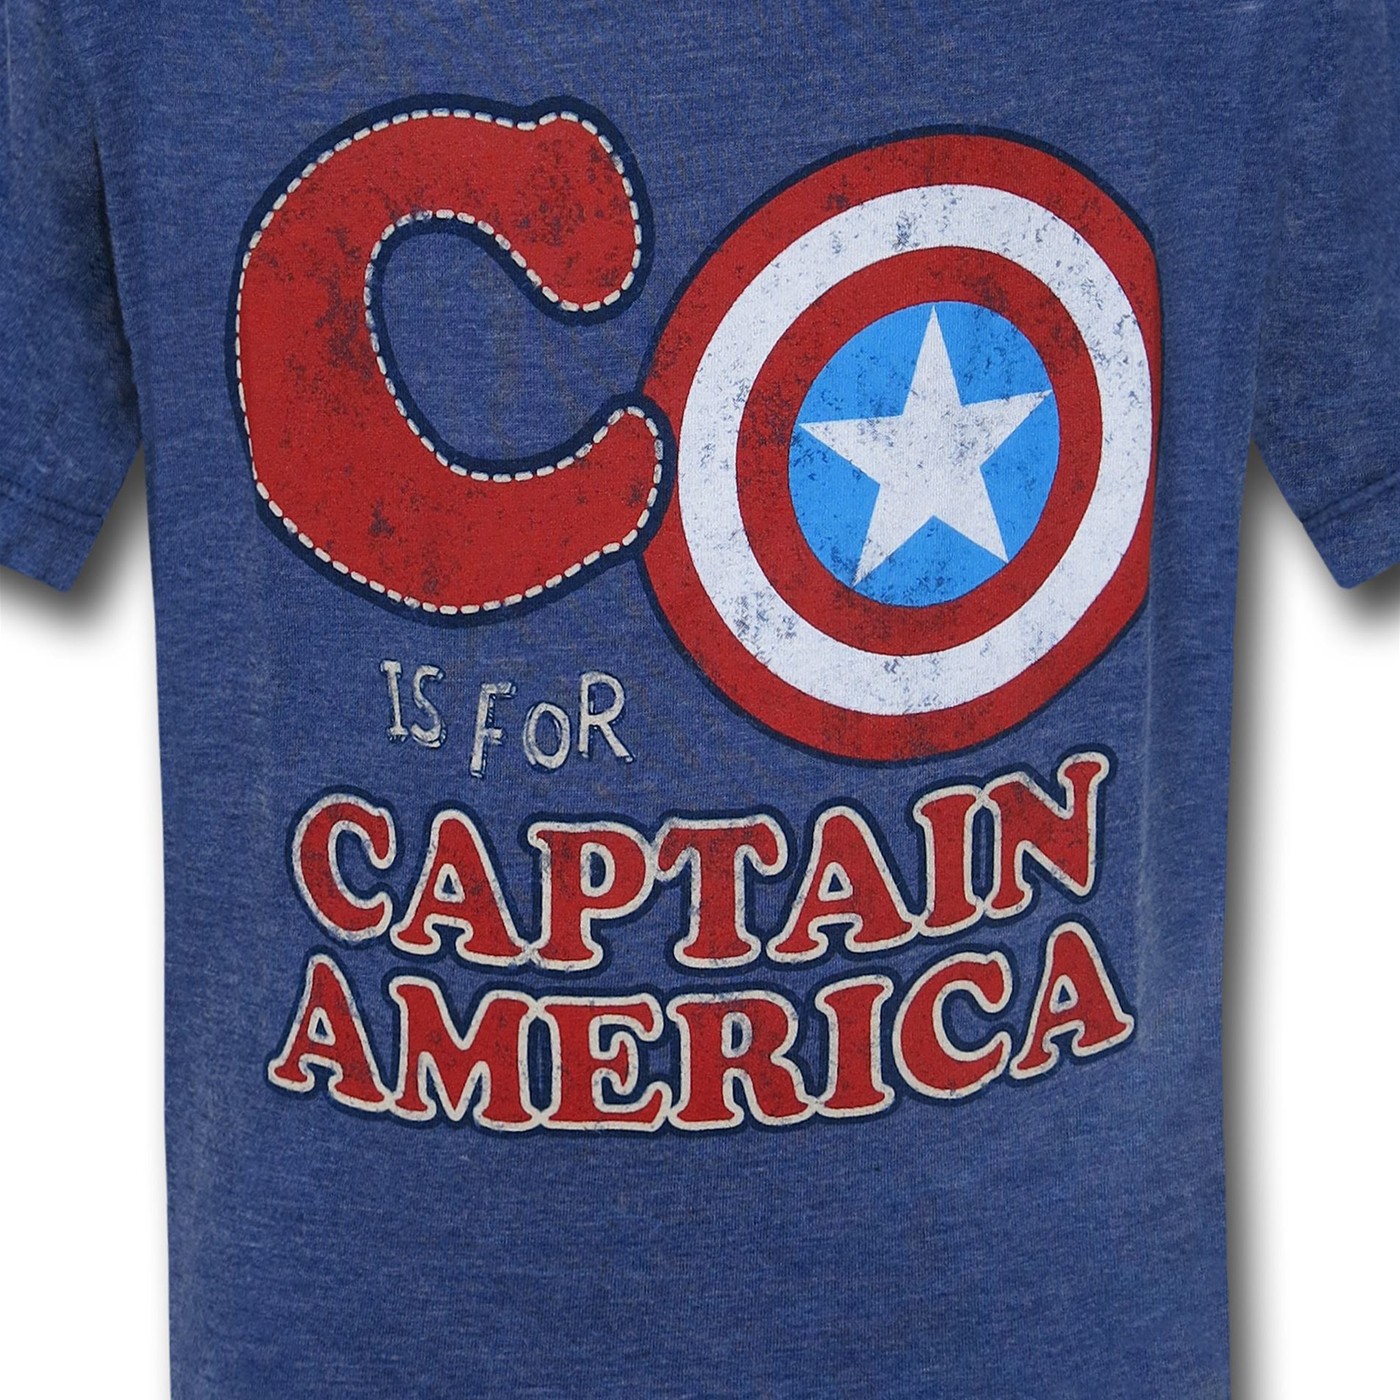 Captain America C for Captain Kids T-Shirt